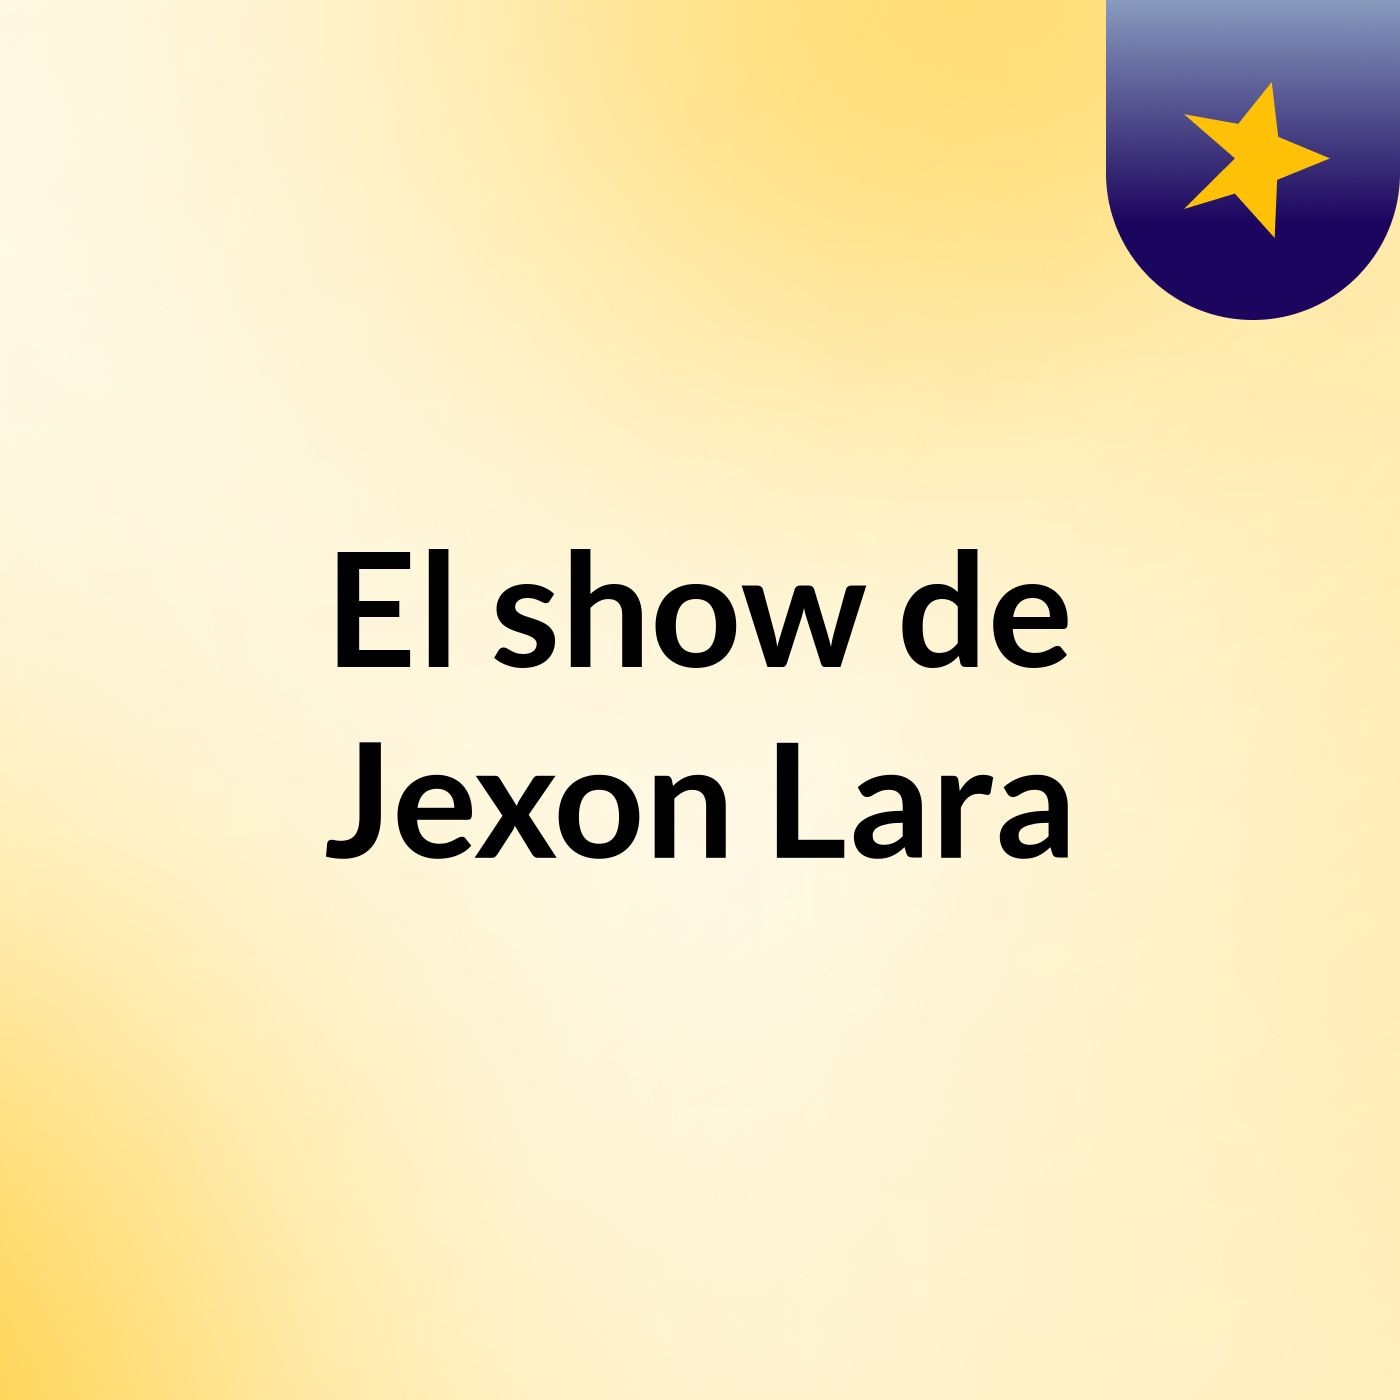 El show de Jexon Lara